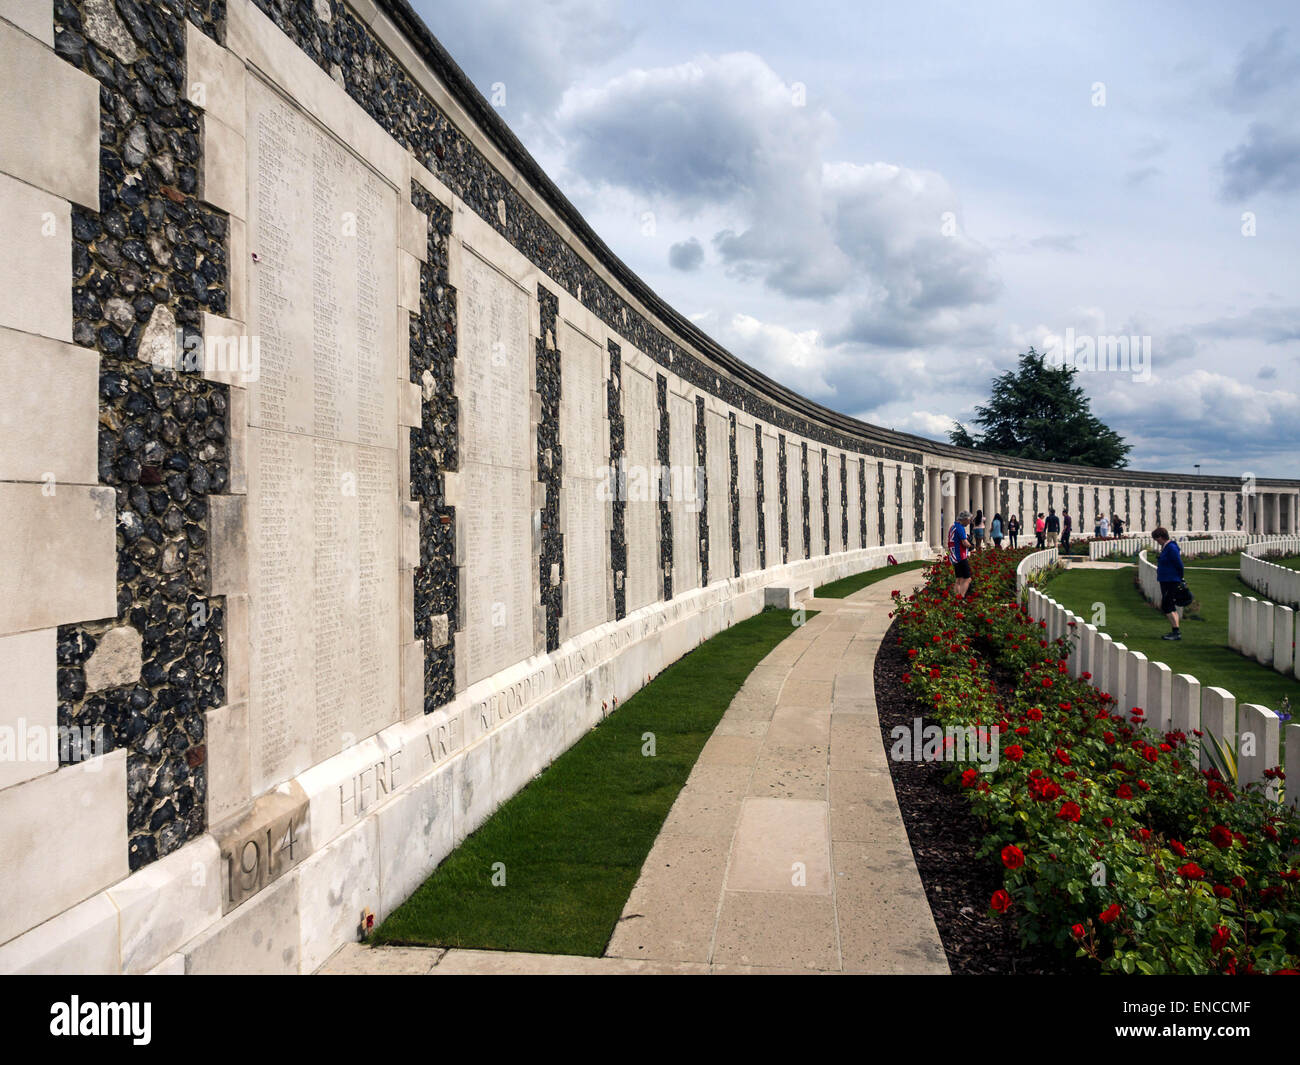 ZONNEBEKE, BELGIO - 25 MAGGIO 2014: Muro commemorativo che elenca i nomi dei soldati scomparsi senza tomba conosciuta al cimitero della prima Guerra Mondiale di Tyne Cot Foto Stock